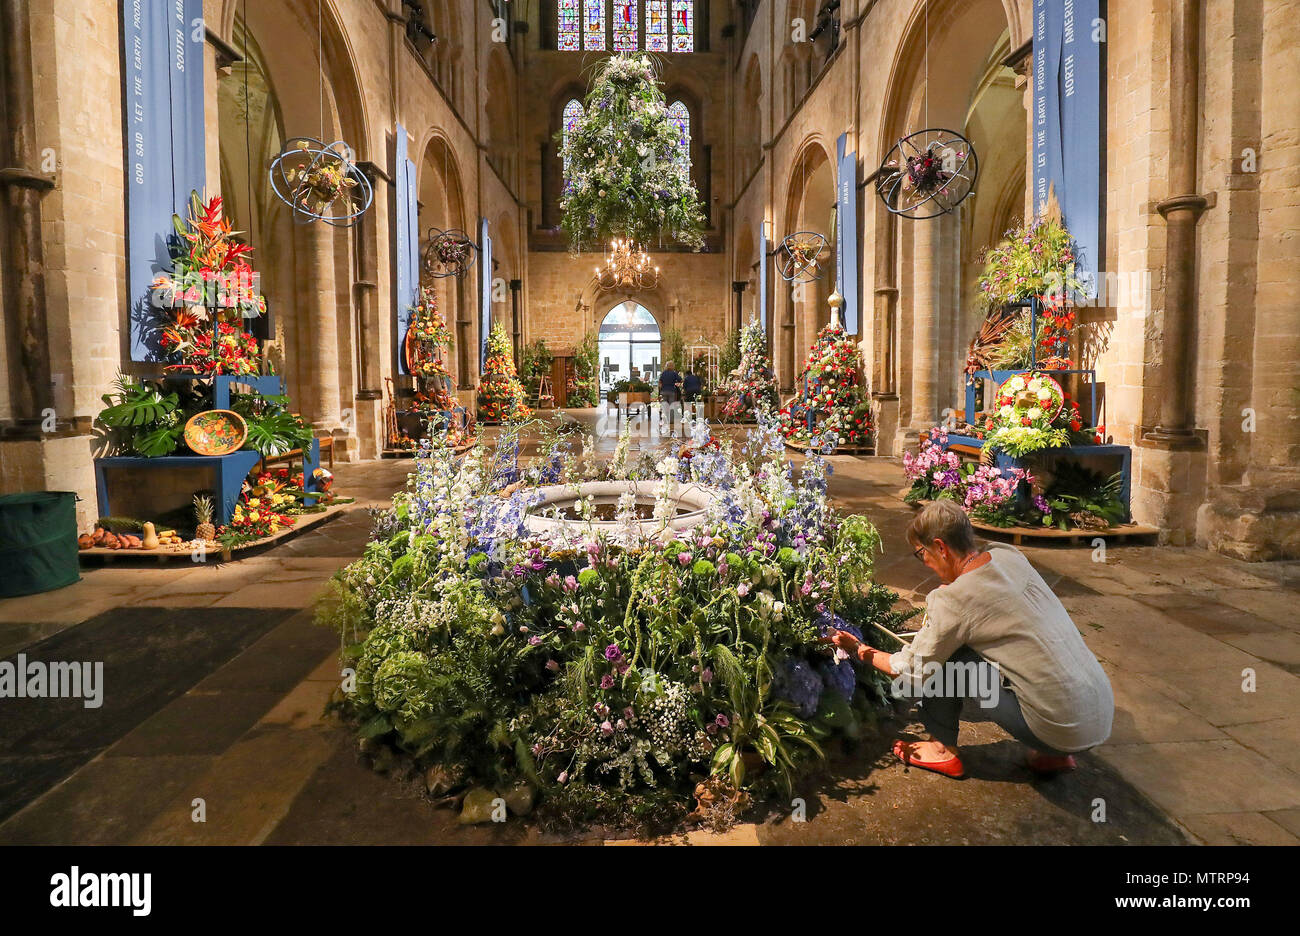 Se están haciendo preparativos para final se muestra dentro de la Catedral de Chichester, pues está lleno con 80 arreglos florales con más de 50.000 flores, para celebrar su festival anual de flores, que este año tiene por tema "El Paraíso terrenal". Foto de stock